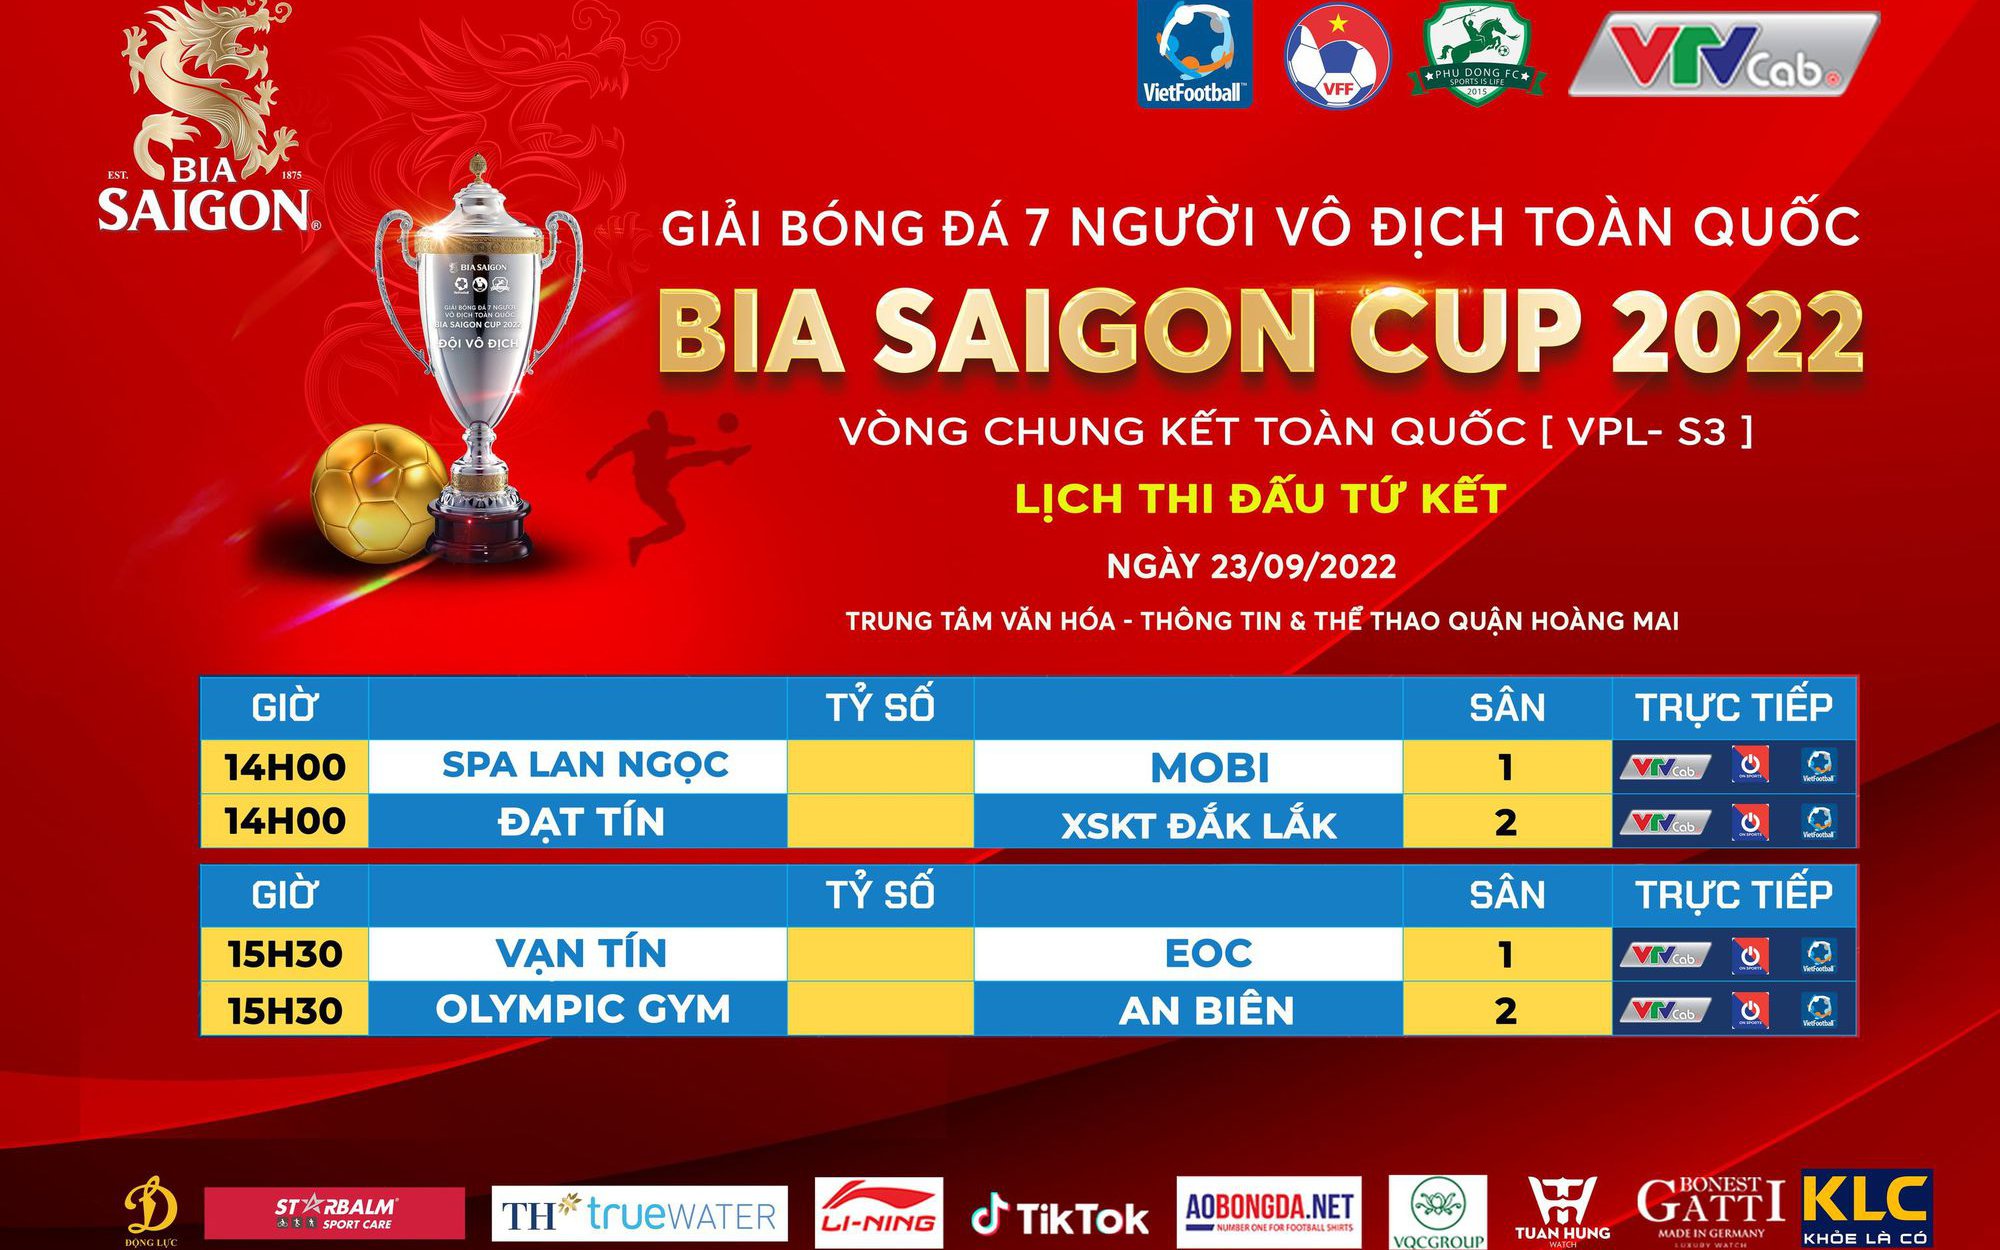 Giải bóng đá 7 người vô địch toàn quốc - Bia Saigon Cup 2022 (VPL3): 150 triệu đồng cho đội vô địch